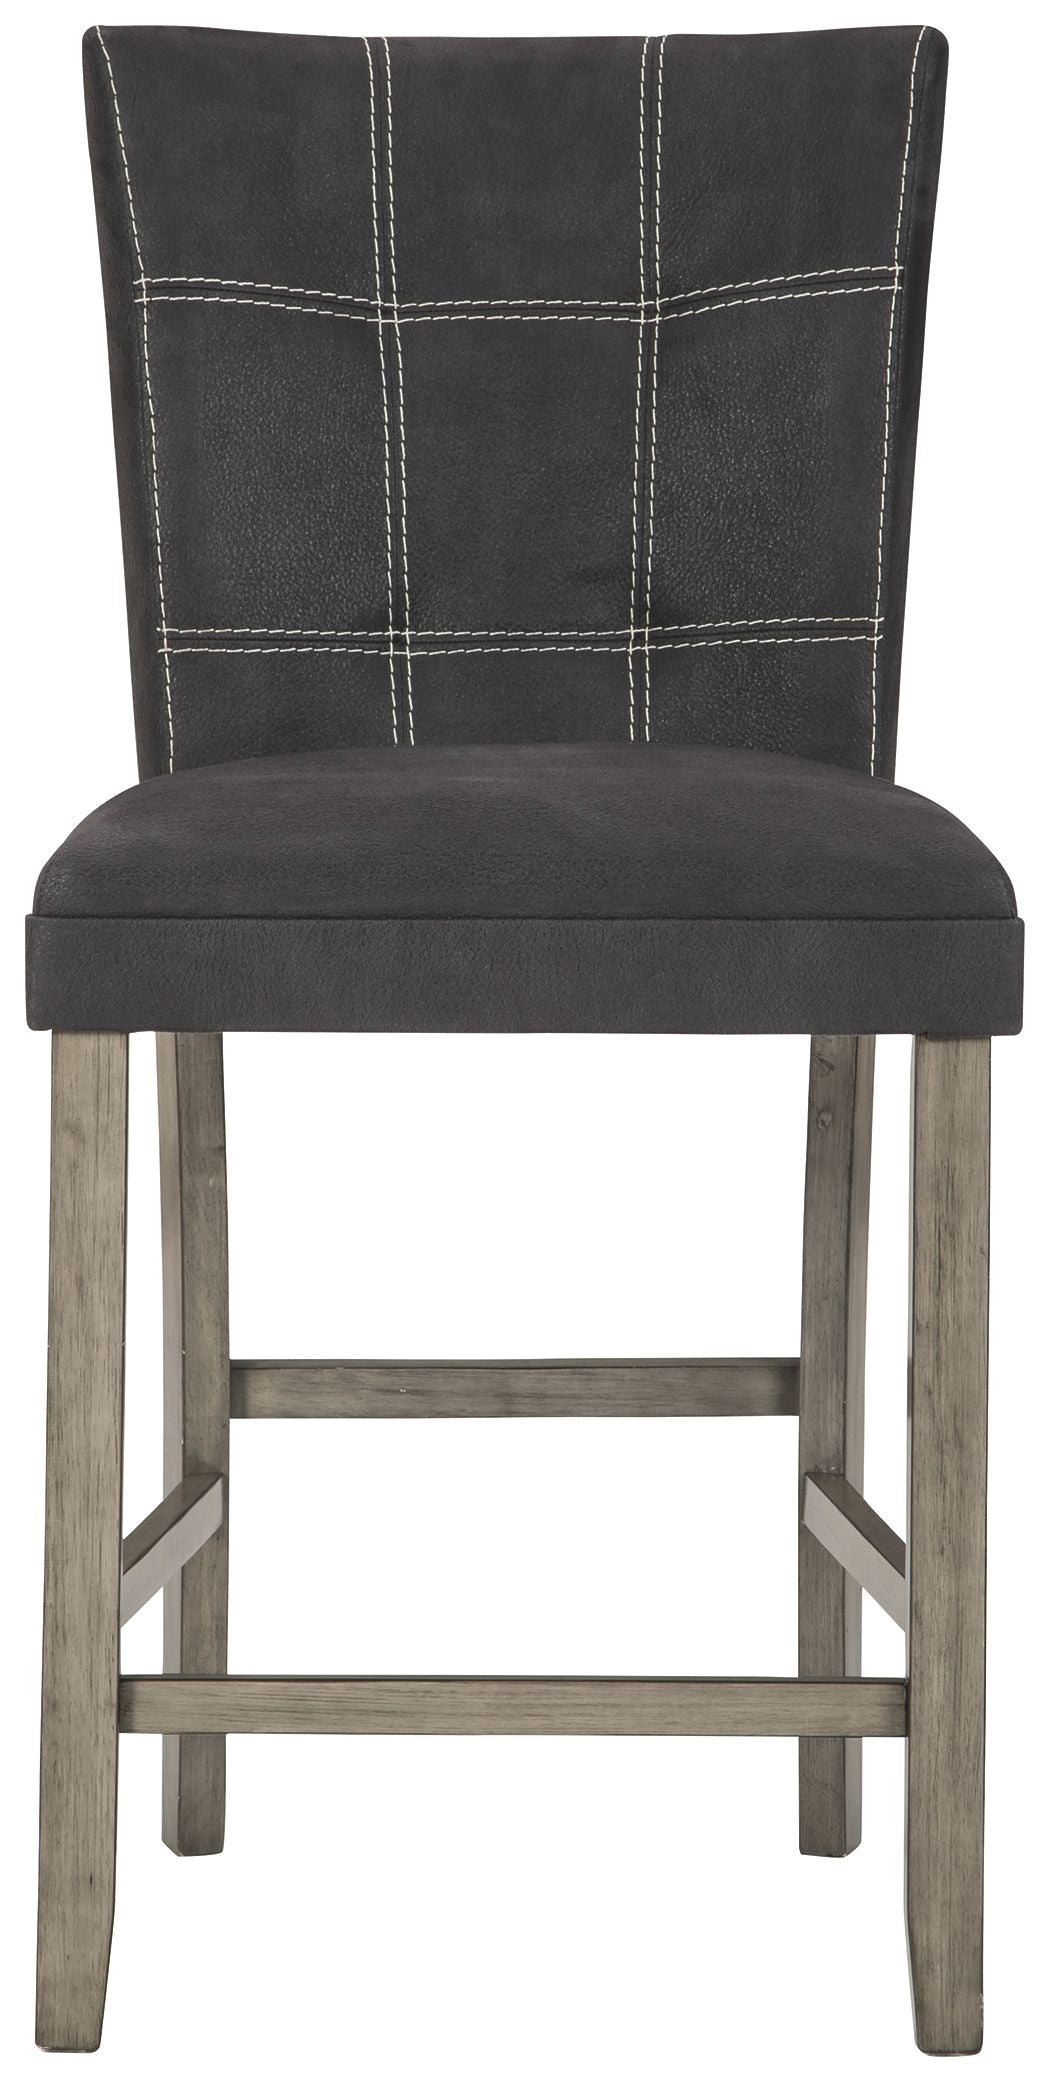 Dontally - Black / Gray - Upholstered Barstool (Set of 2)